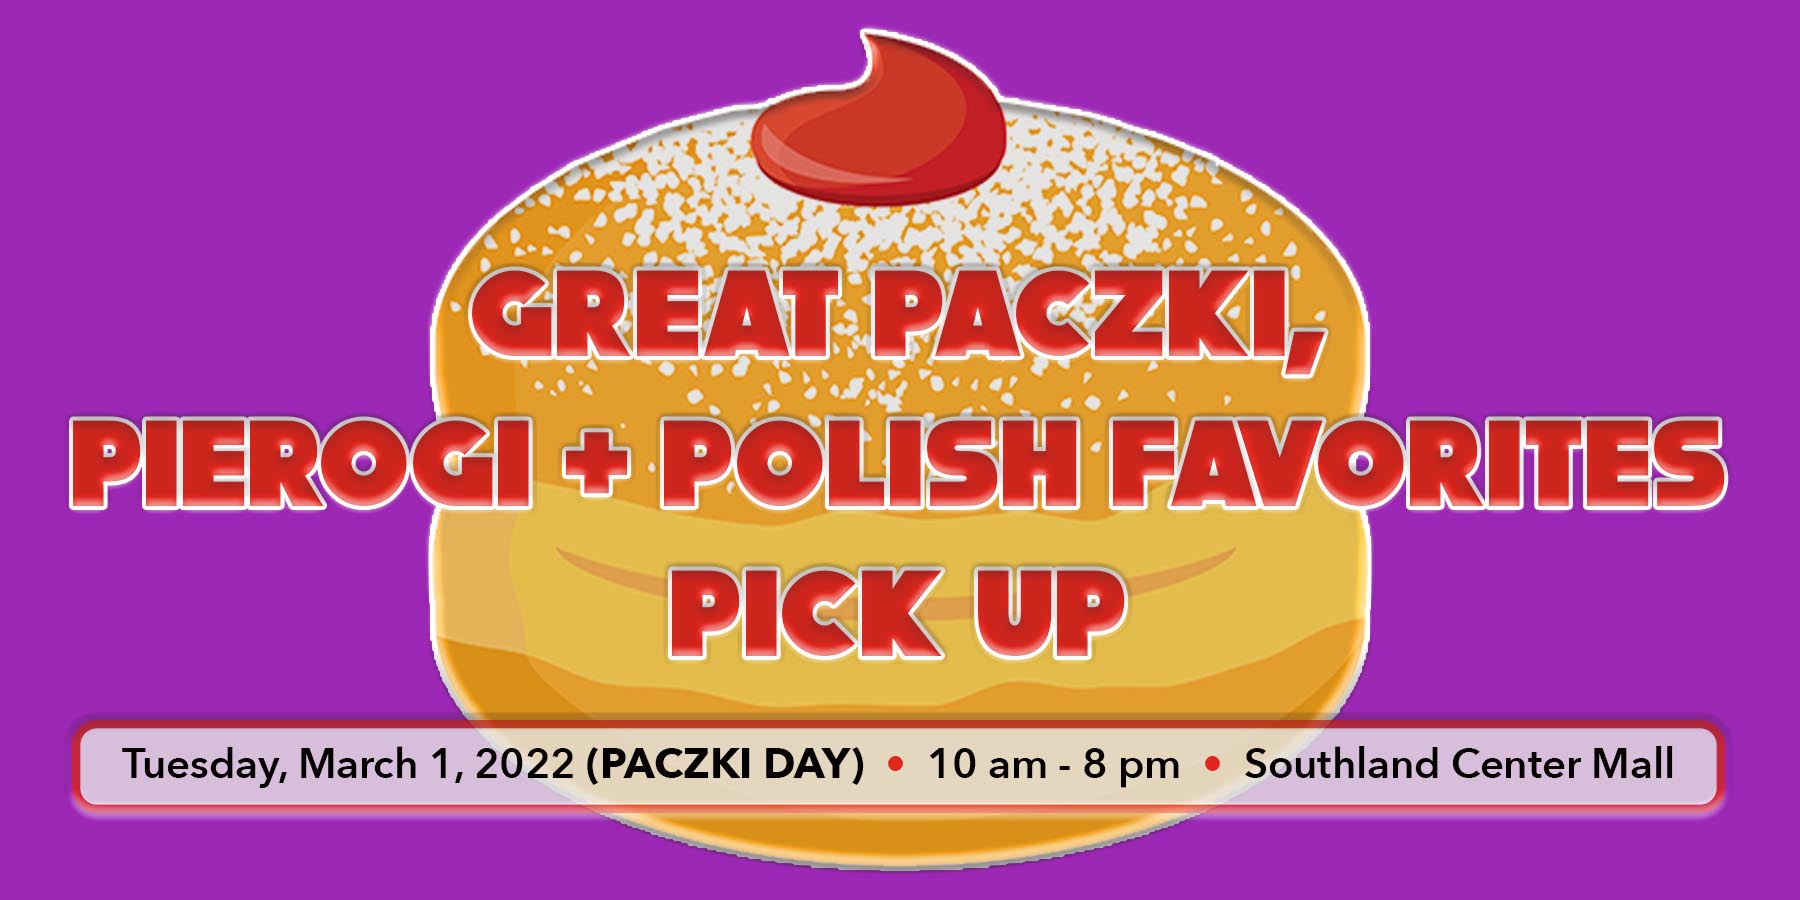 Great Paczki Pick Up